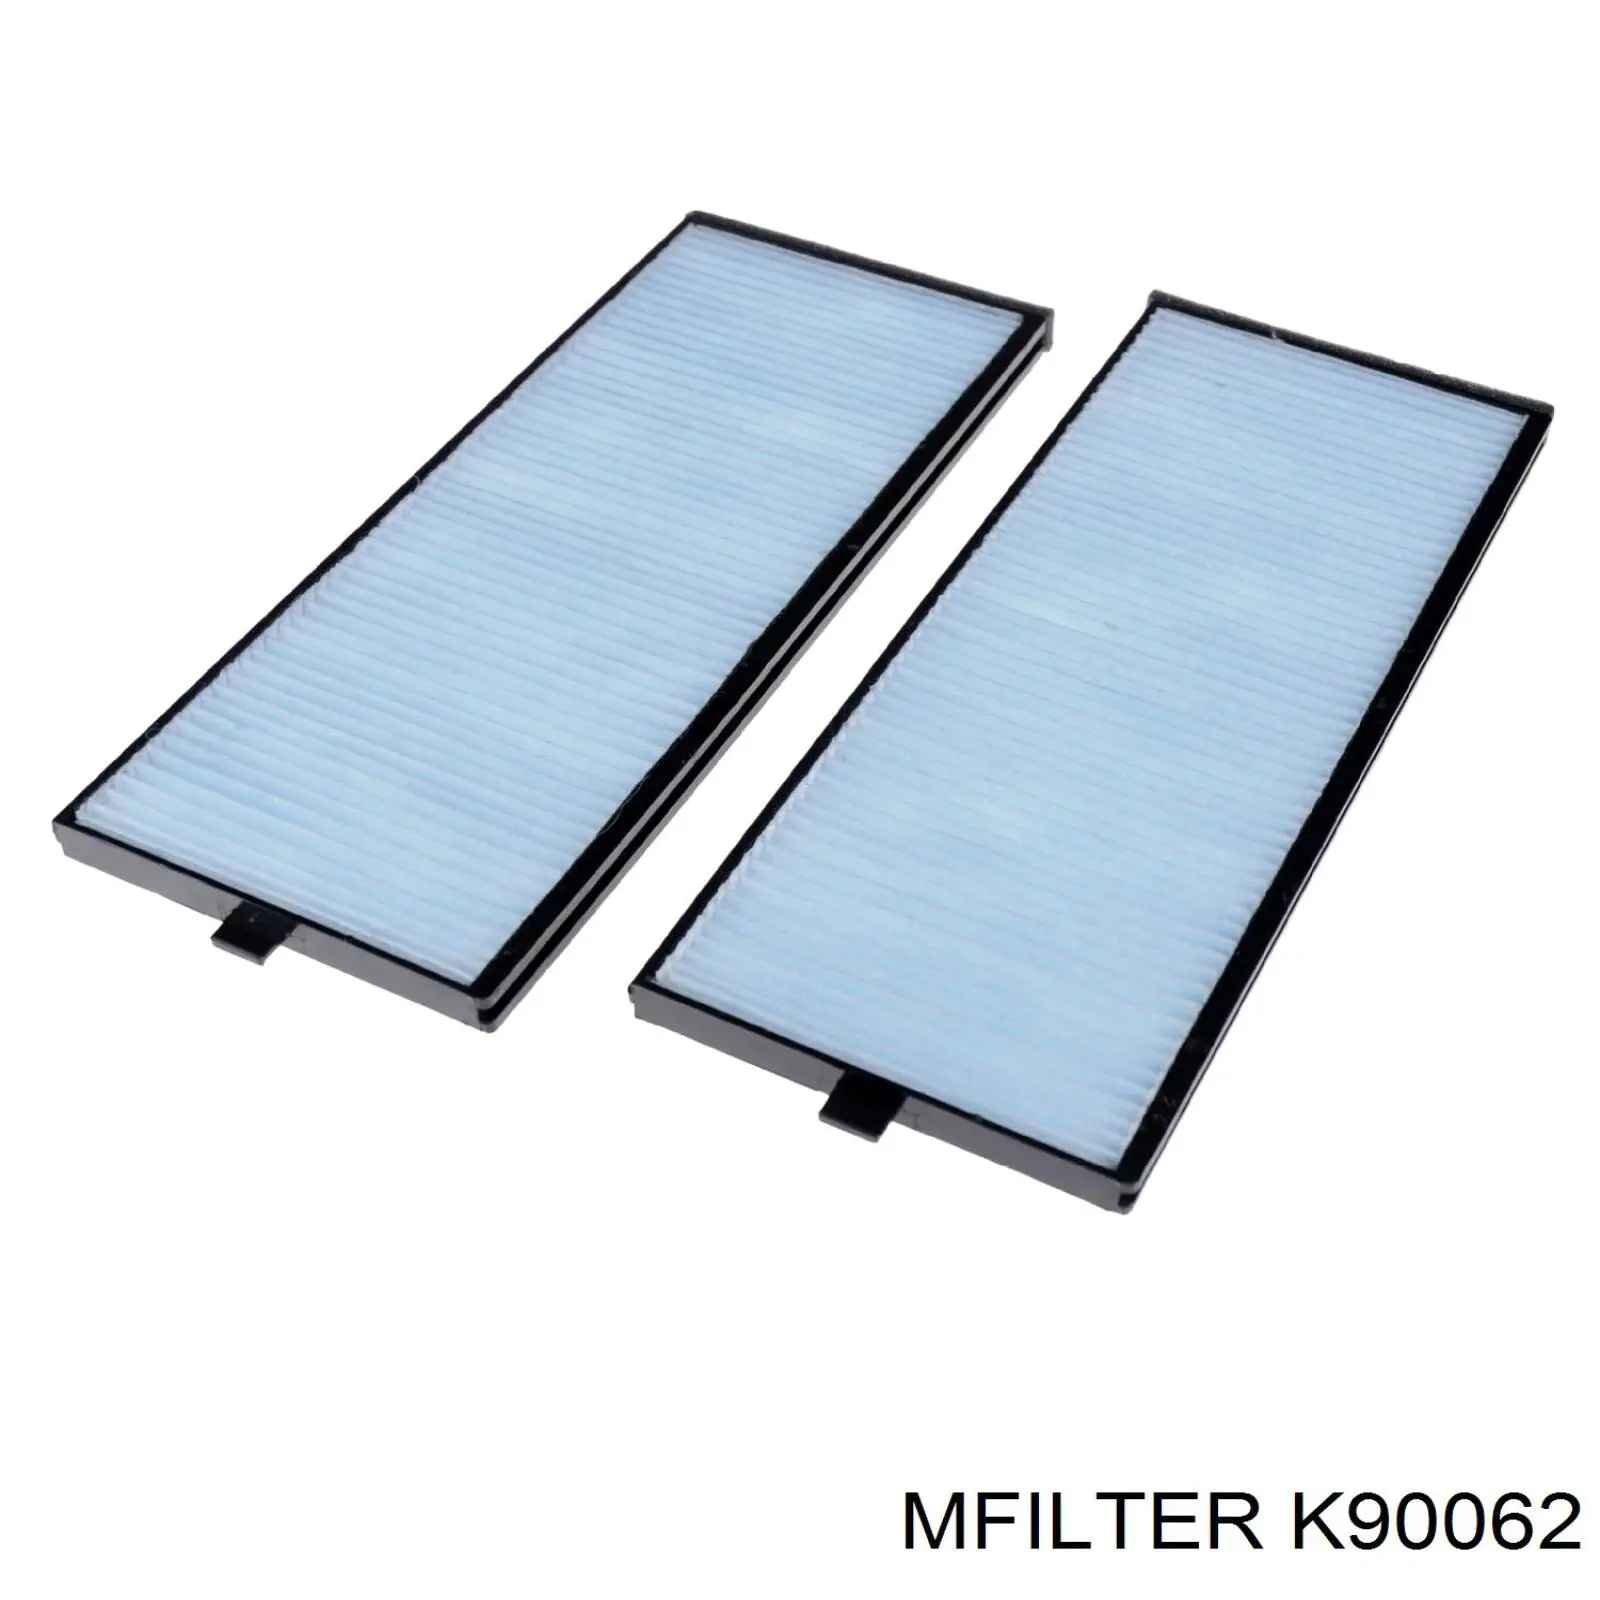 K90062 Mfilter filtro habitáculo